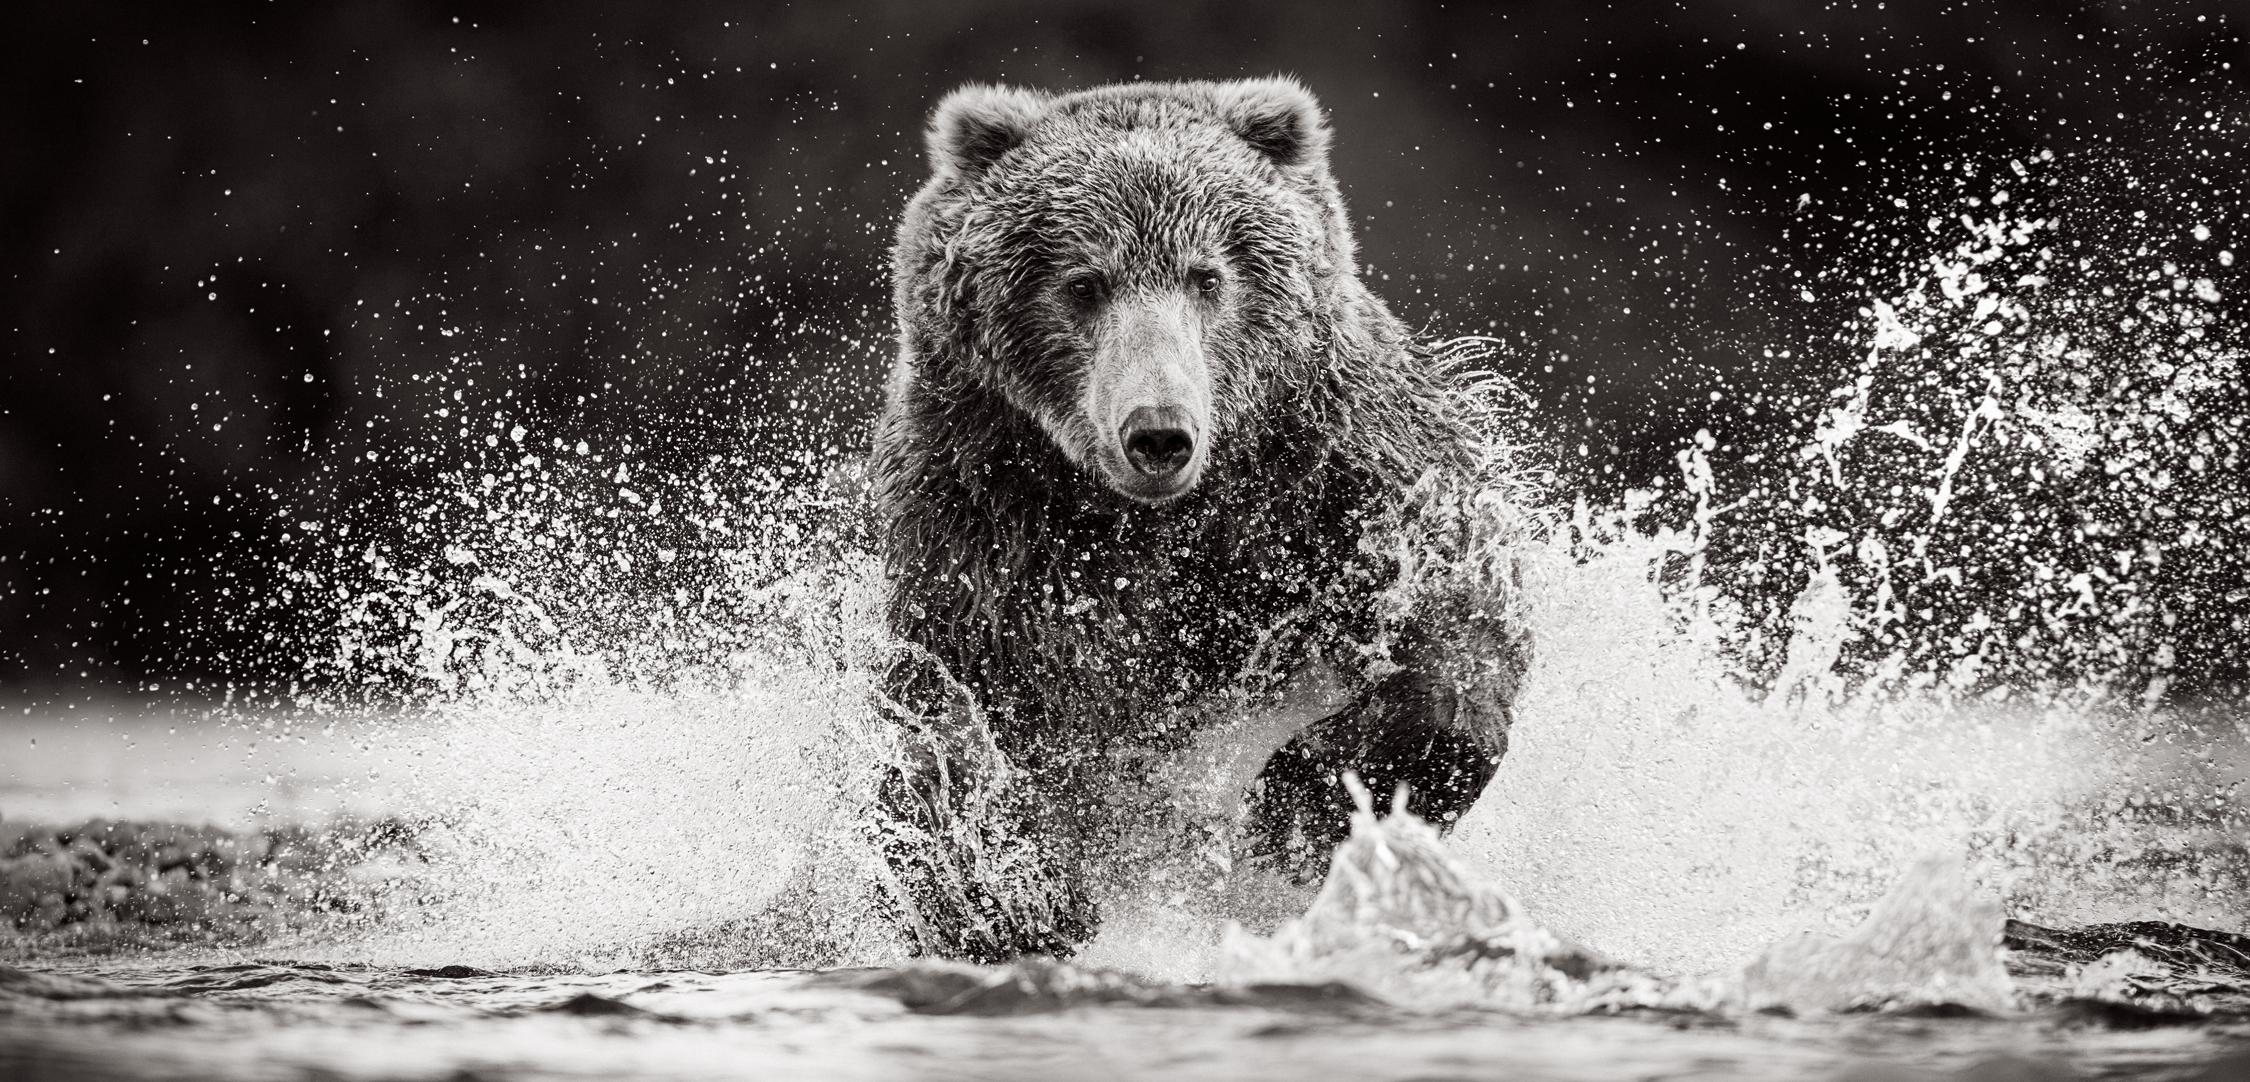 Black and White Photograph Drew Doggett - Un ours brun fonce dans l'eau